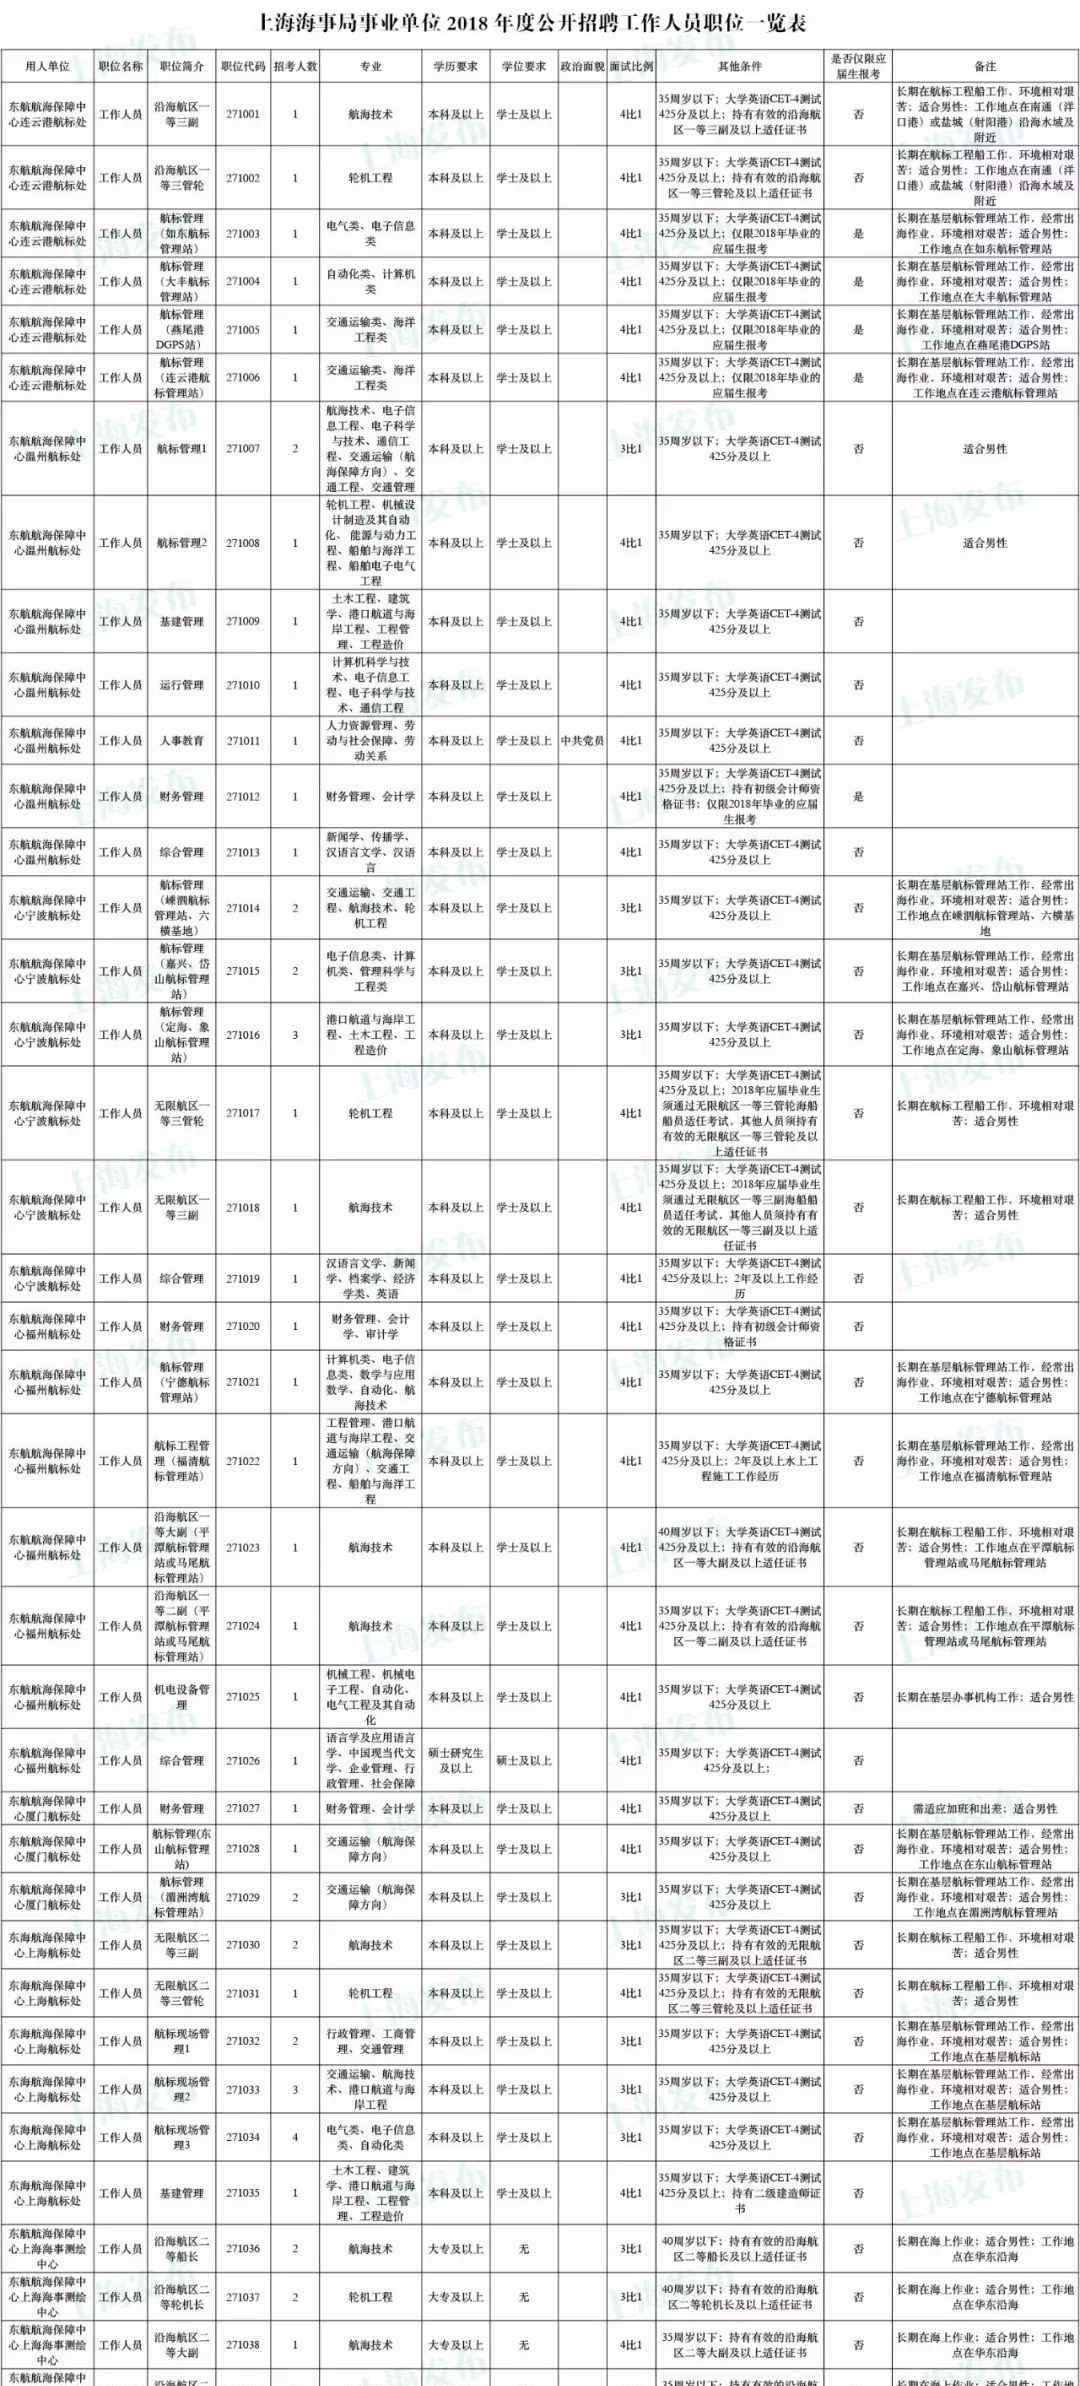 上海海事局证书查询 【招聘】上海海事局公开招聘111人